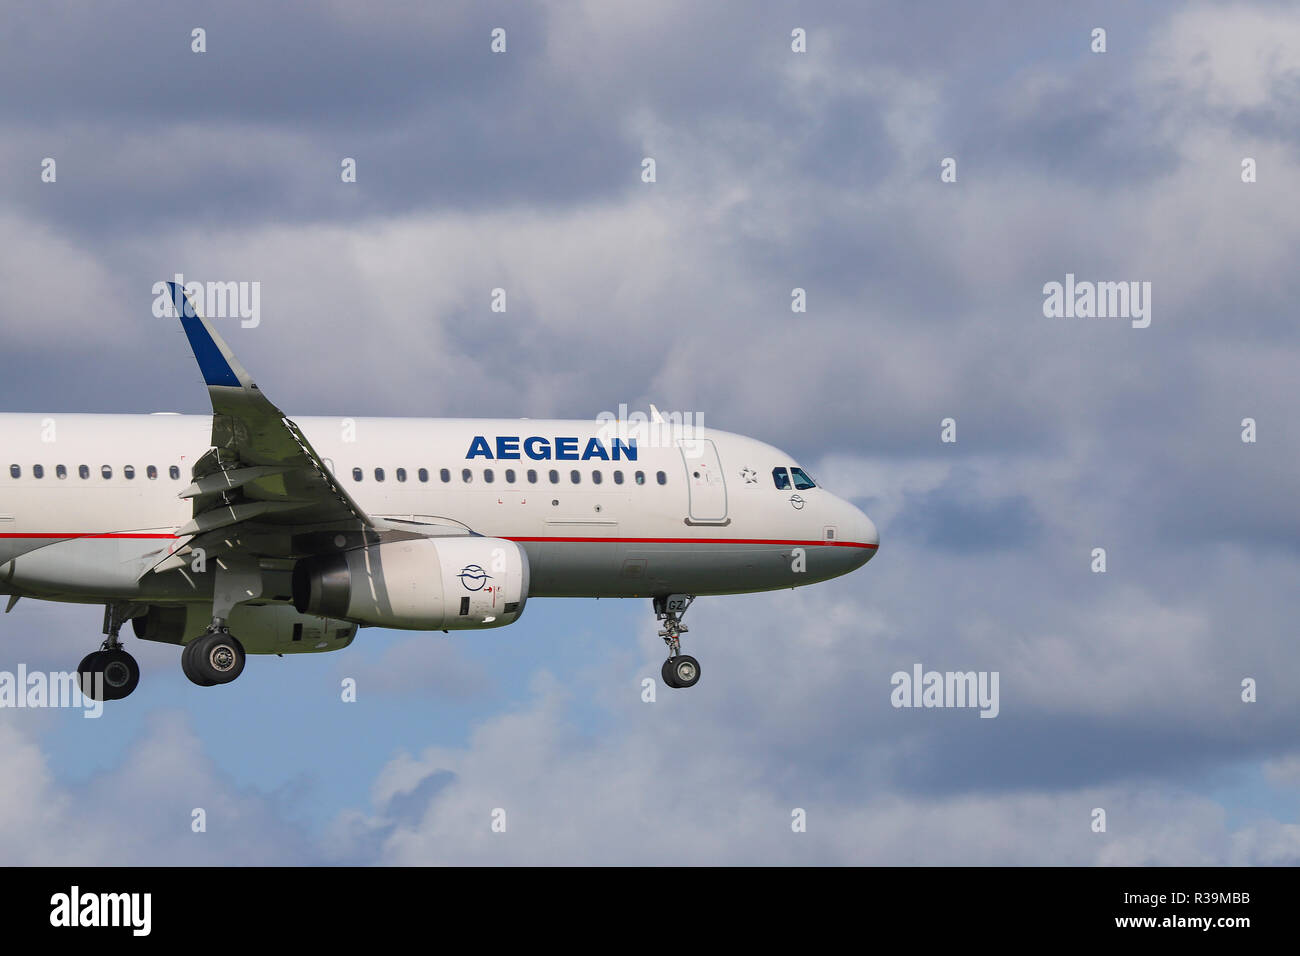 Aegean Airlines Airbus A320-232(WL) vu l'atterrissage à l'aéroport international Schiphol d'Amsterdam au cours d'une journée d'été. Aegean Airlines relie Athènes à Amsterdam toute l'année. Banque D'Images